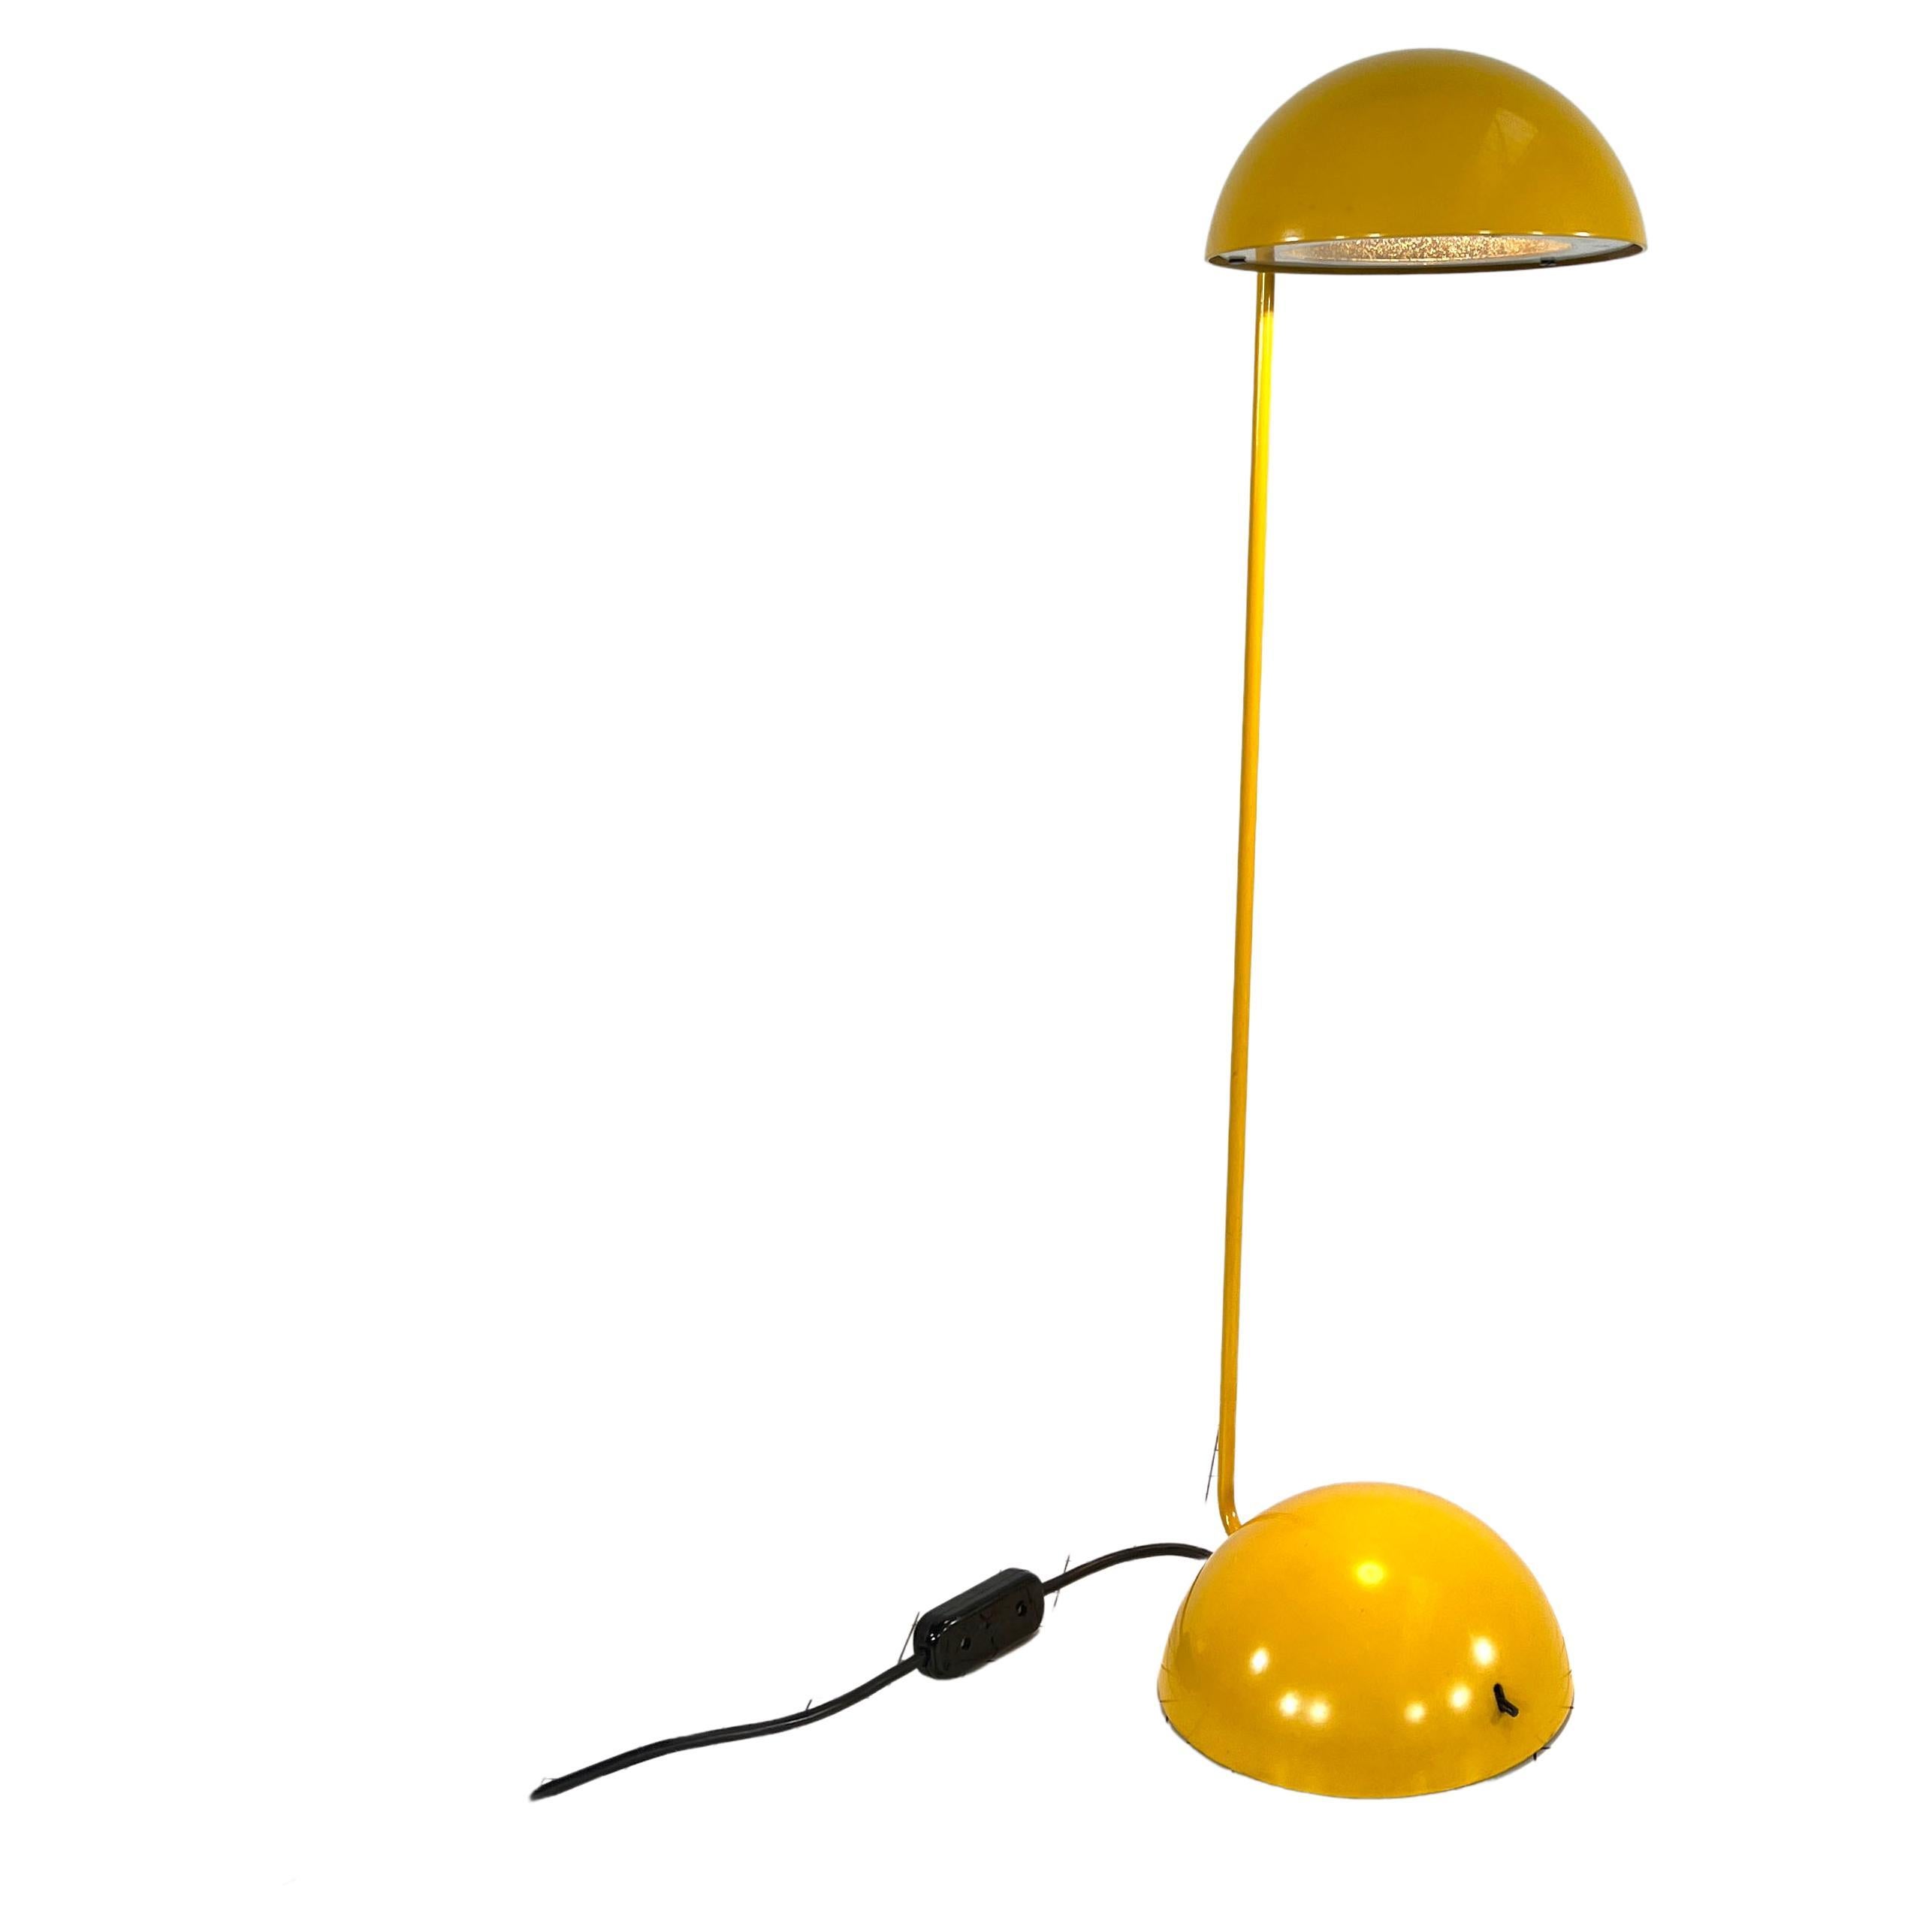 Big Yellow Bikini Table Lamp by R. Barbieri & G. Marianelli for Tronconi, 1970s